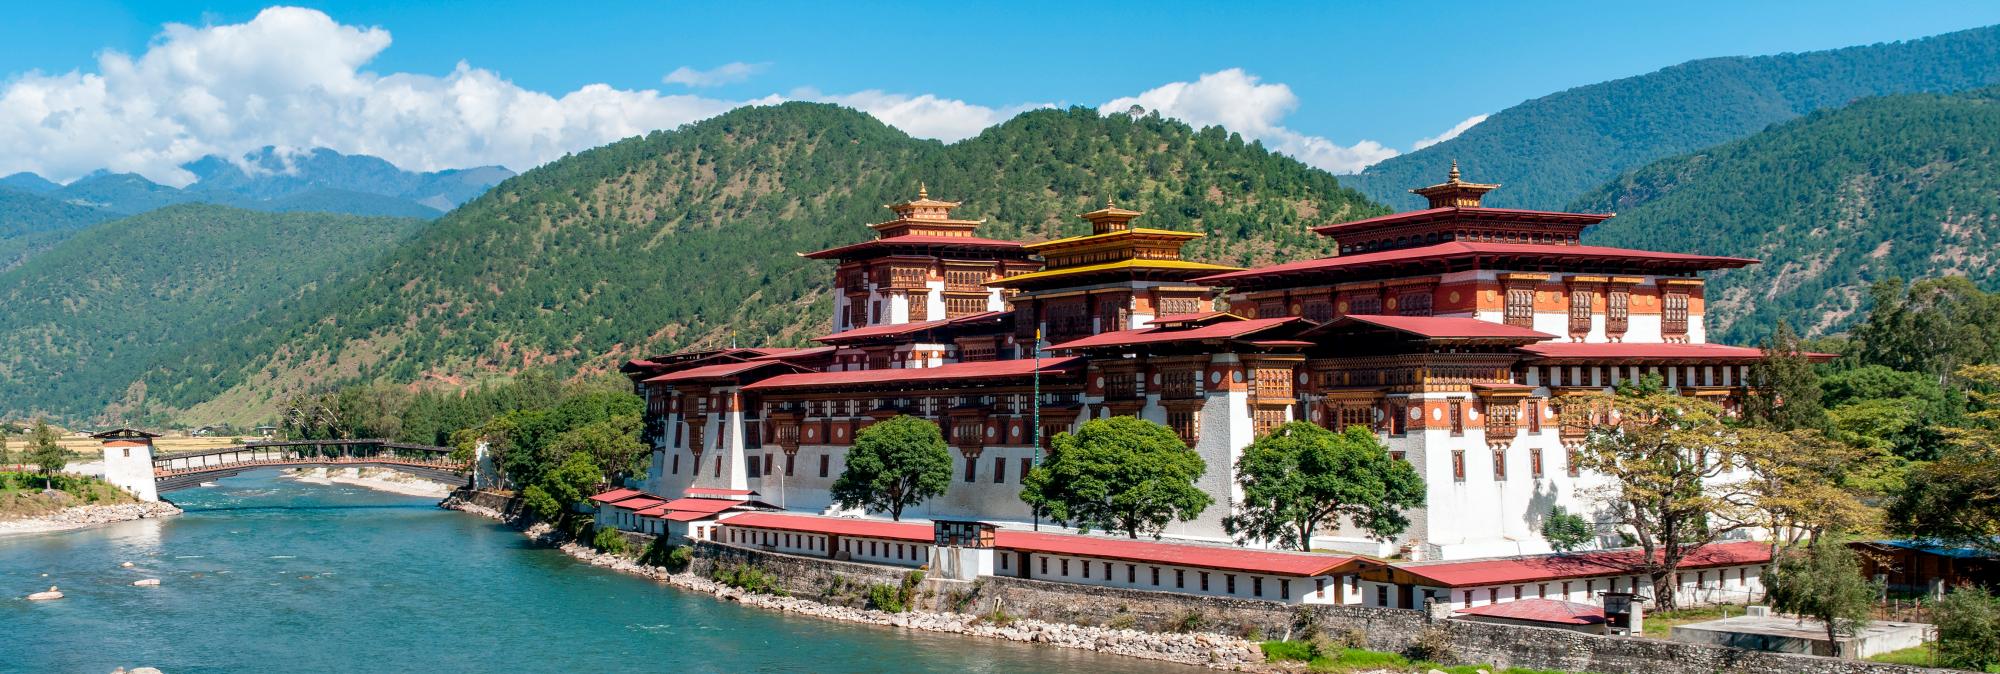 El Punakha Dzong es el centro administrativo del distrito de Punakha con un bello monasterio, en esta ciudad de Bután.